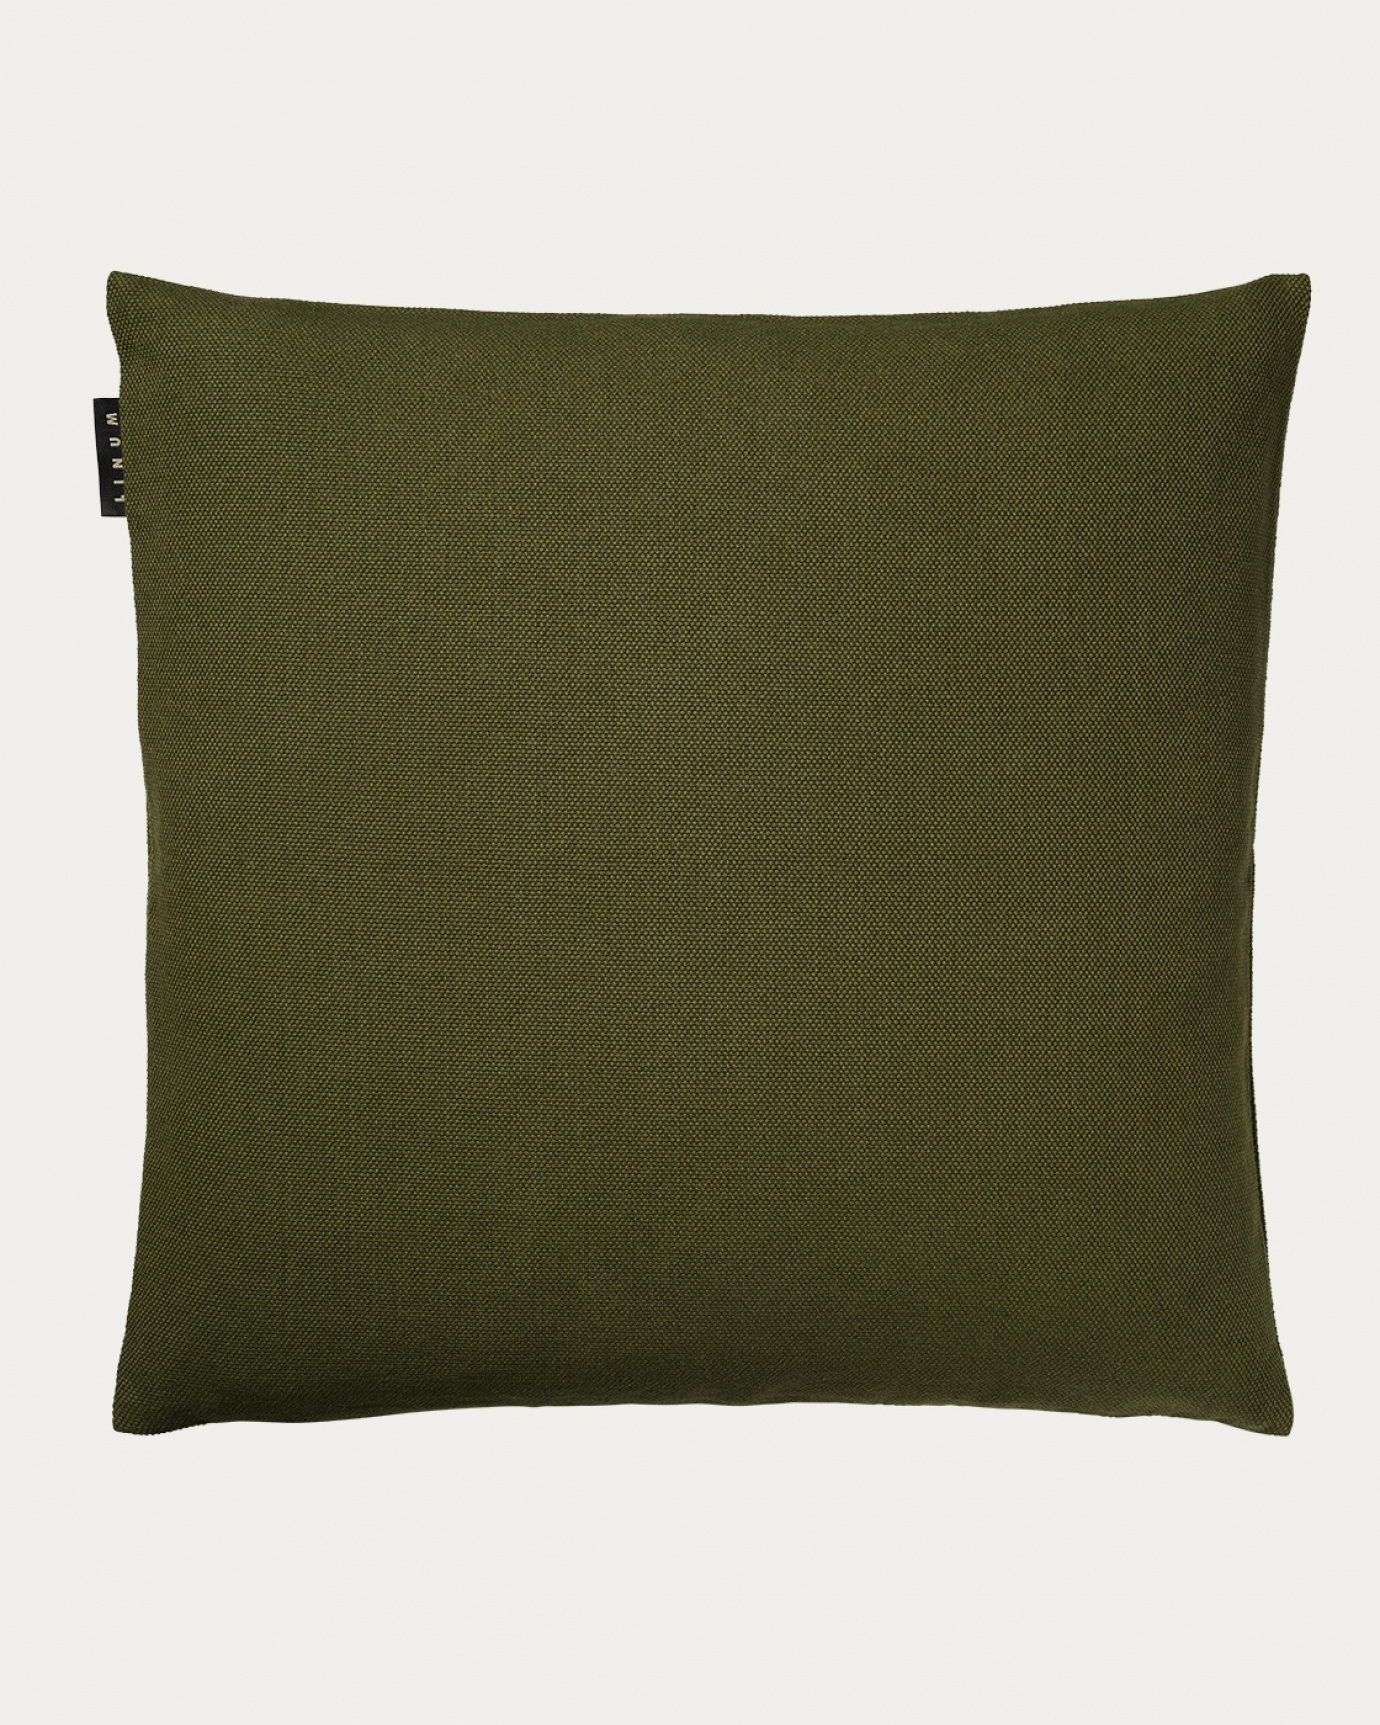 Immagine prodotto verde oliva scuro PEPPER copricuscini in morbido cotone di LINUM DESIGN. Facile da lavare e resistente per generazioni. Dimensioni 60x60 cm.